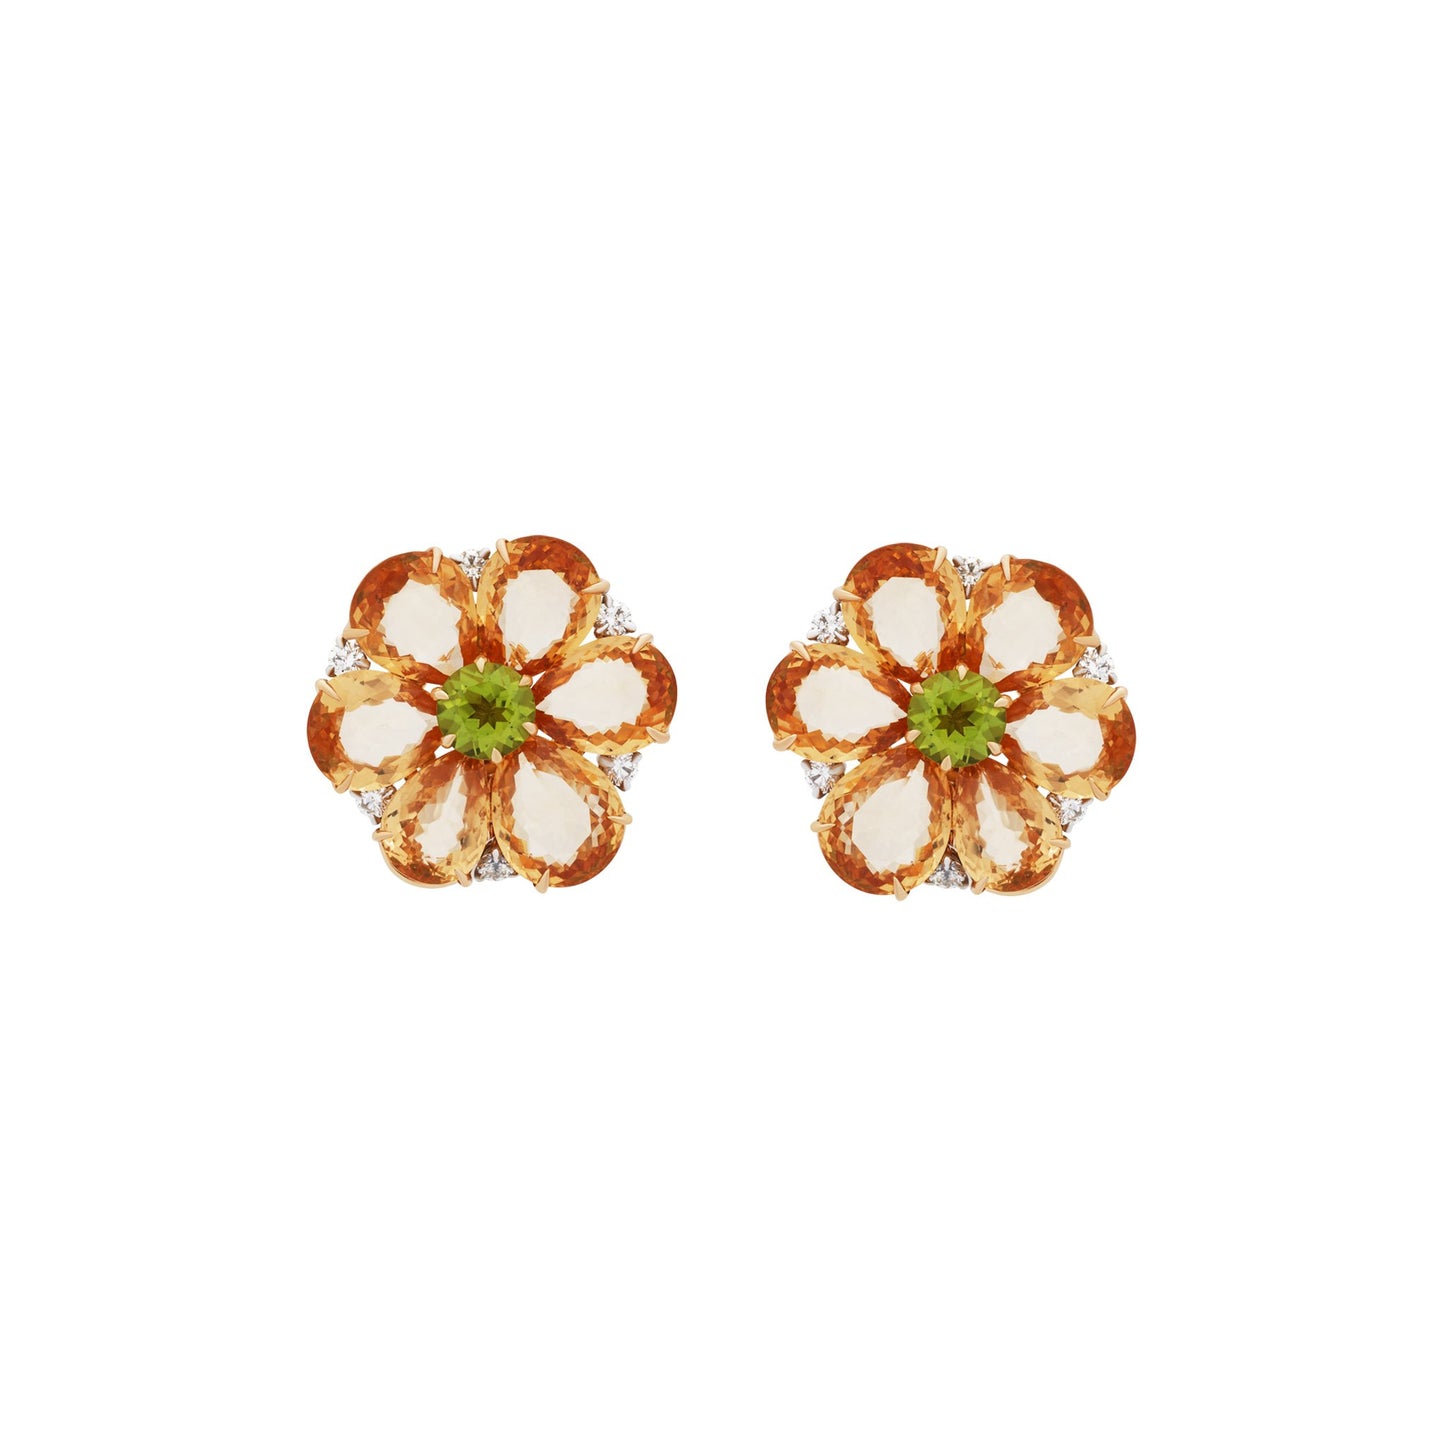 Bvlgari 18K Yellow Gold Orange Sapphire Peridot & Diamond Earrings